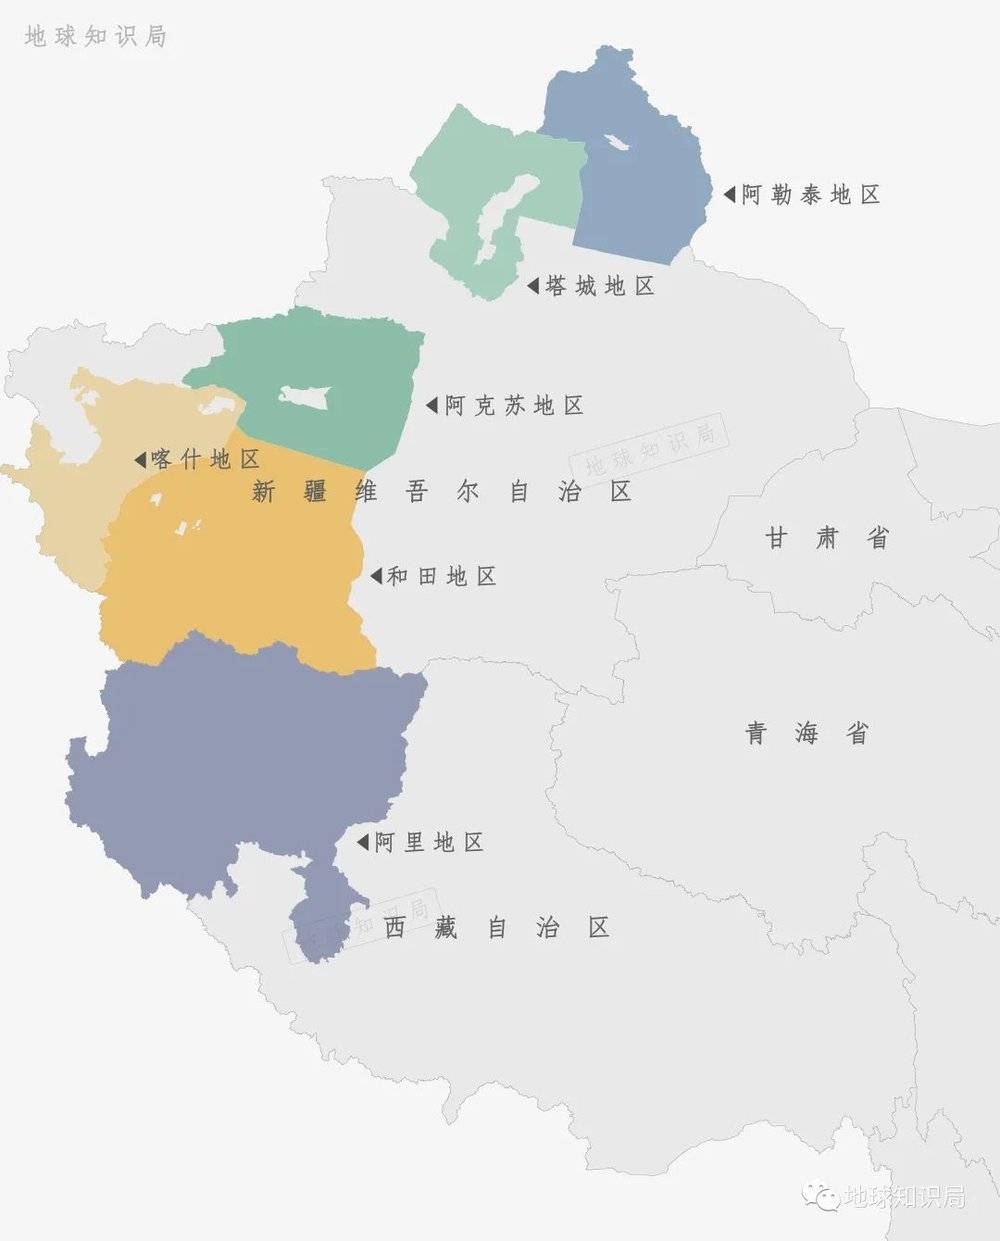 除了黑龙江，就只有新疆、西藏有地区了